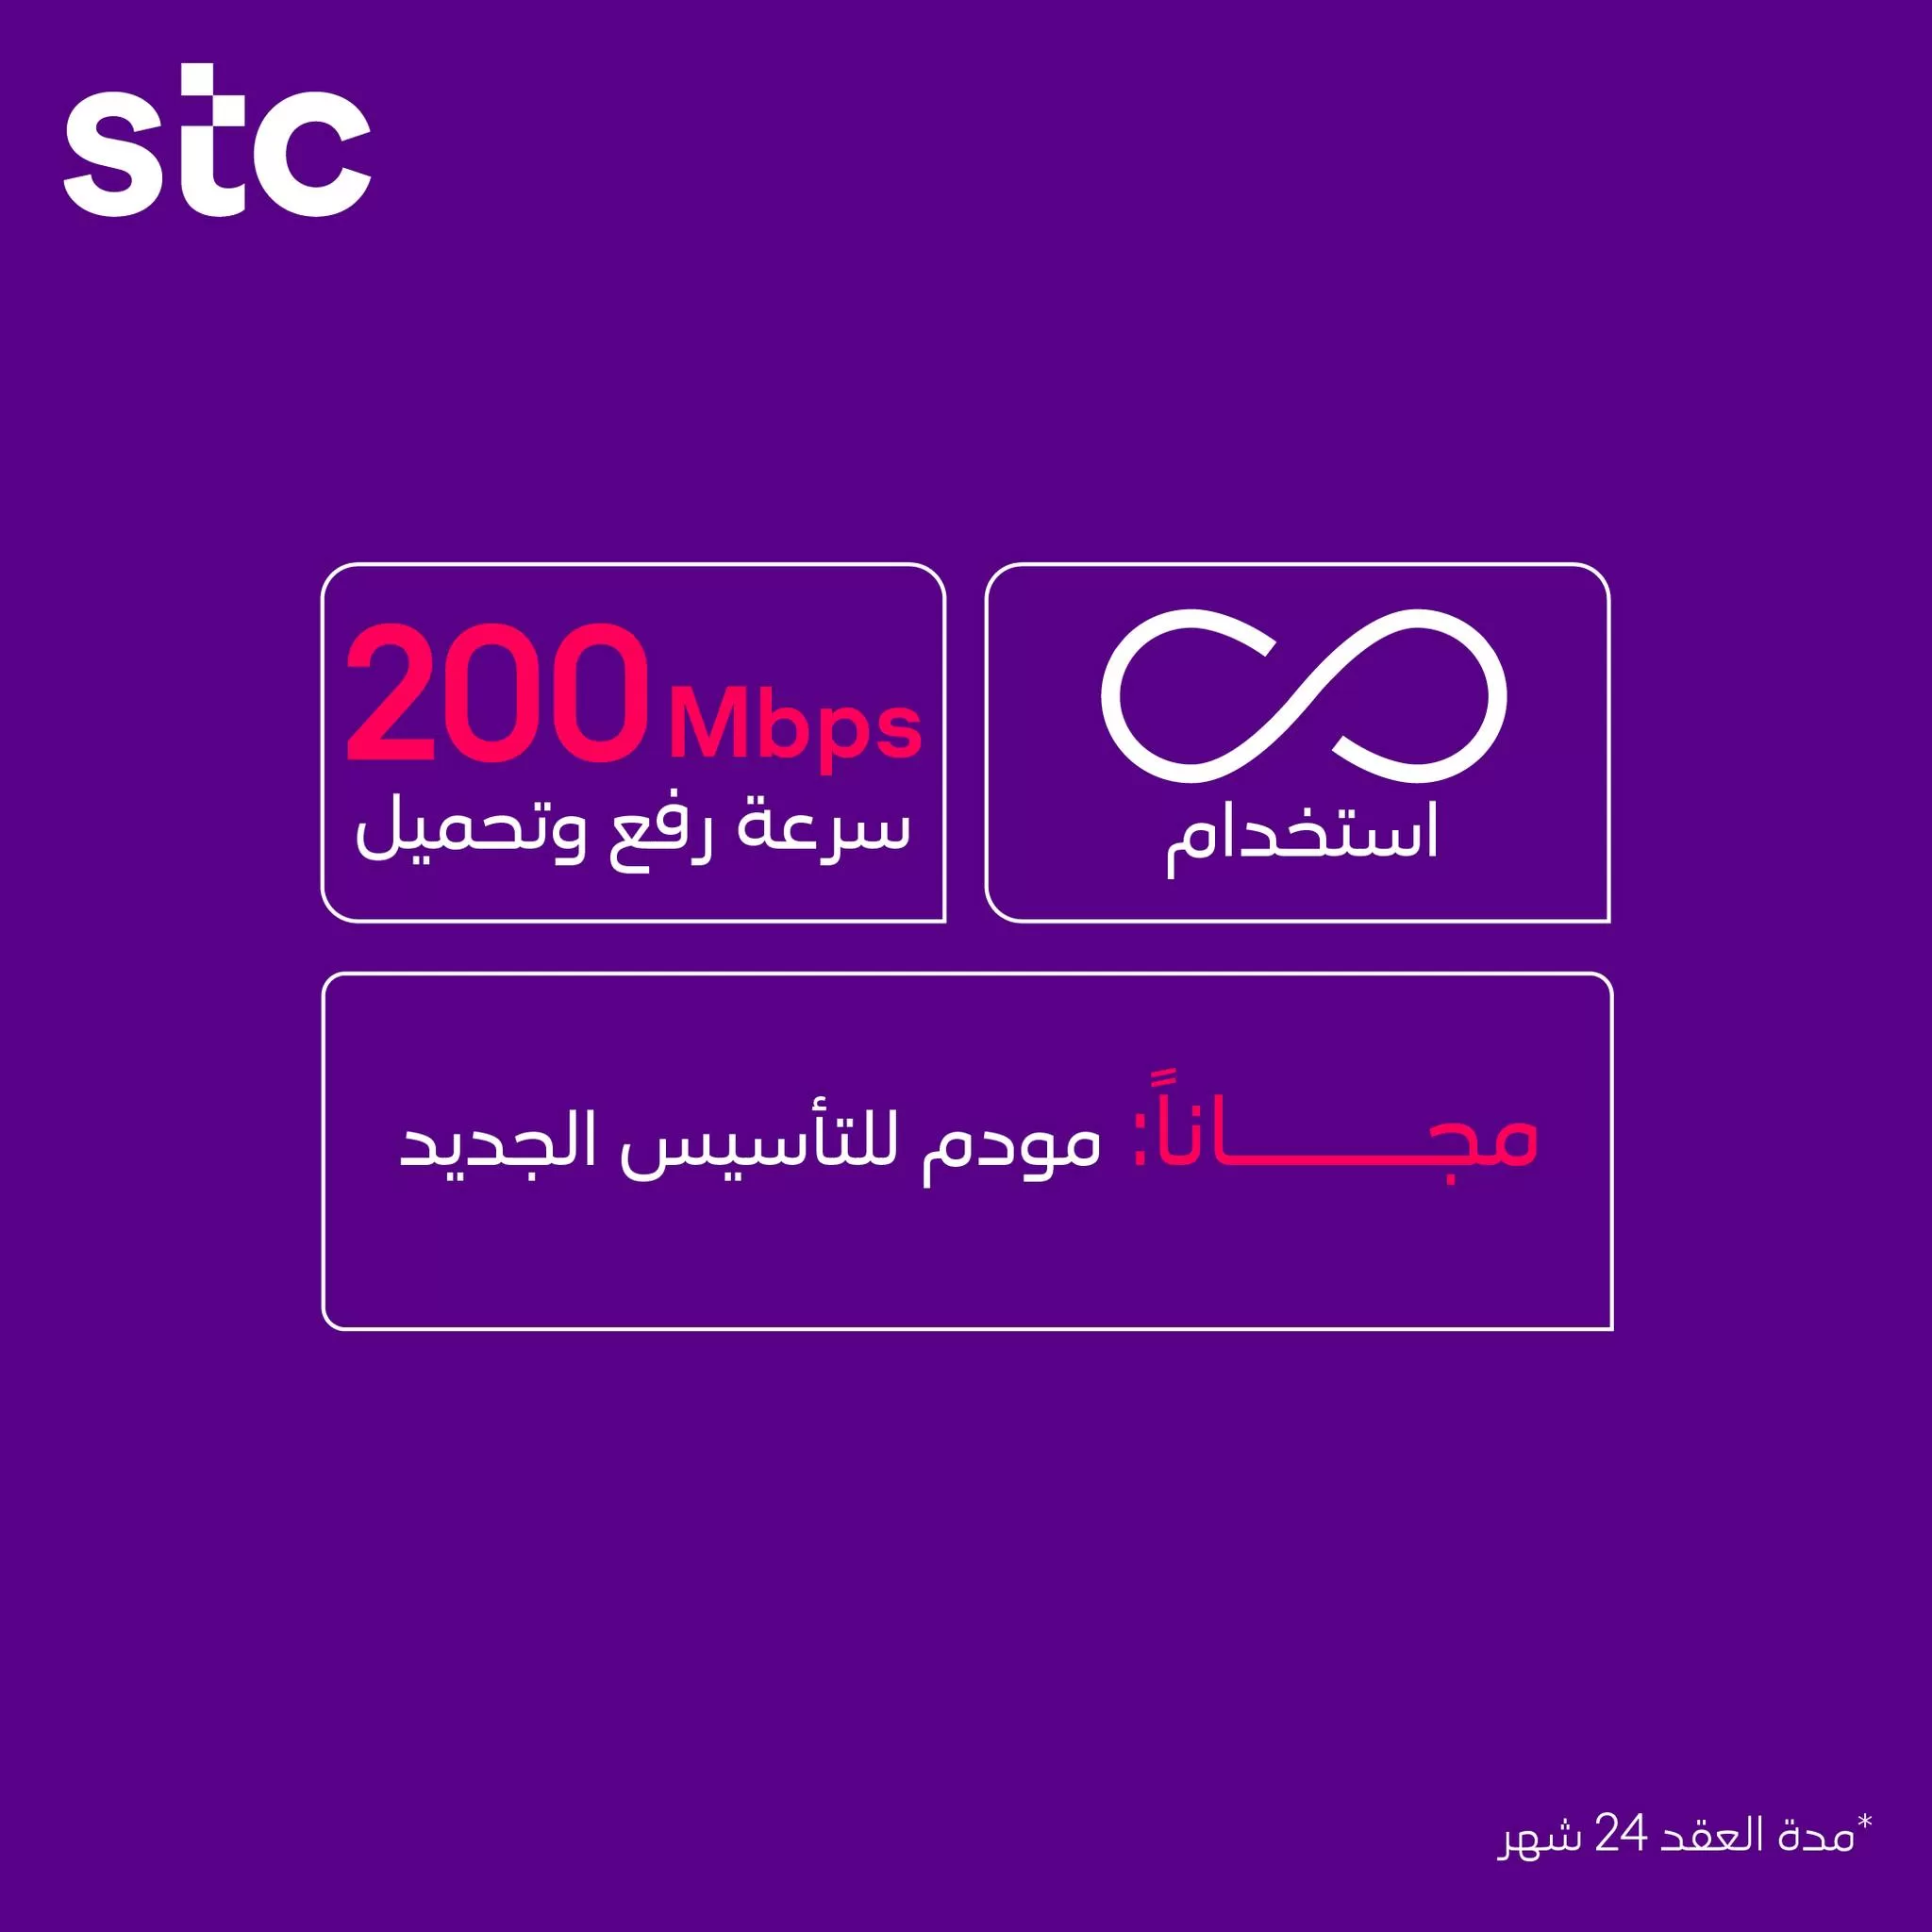 344312532 1237606046869061 2668491413667775590 n jpg - عروض اتصالات السعودية علي خدمات الانترنت المباشر | مميزات مختلفة